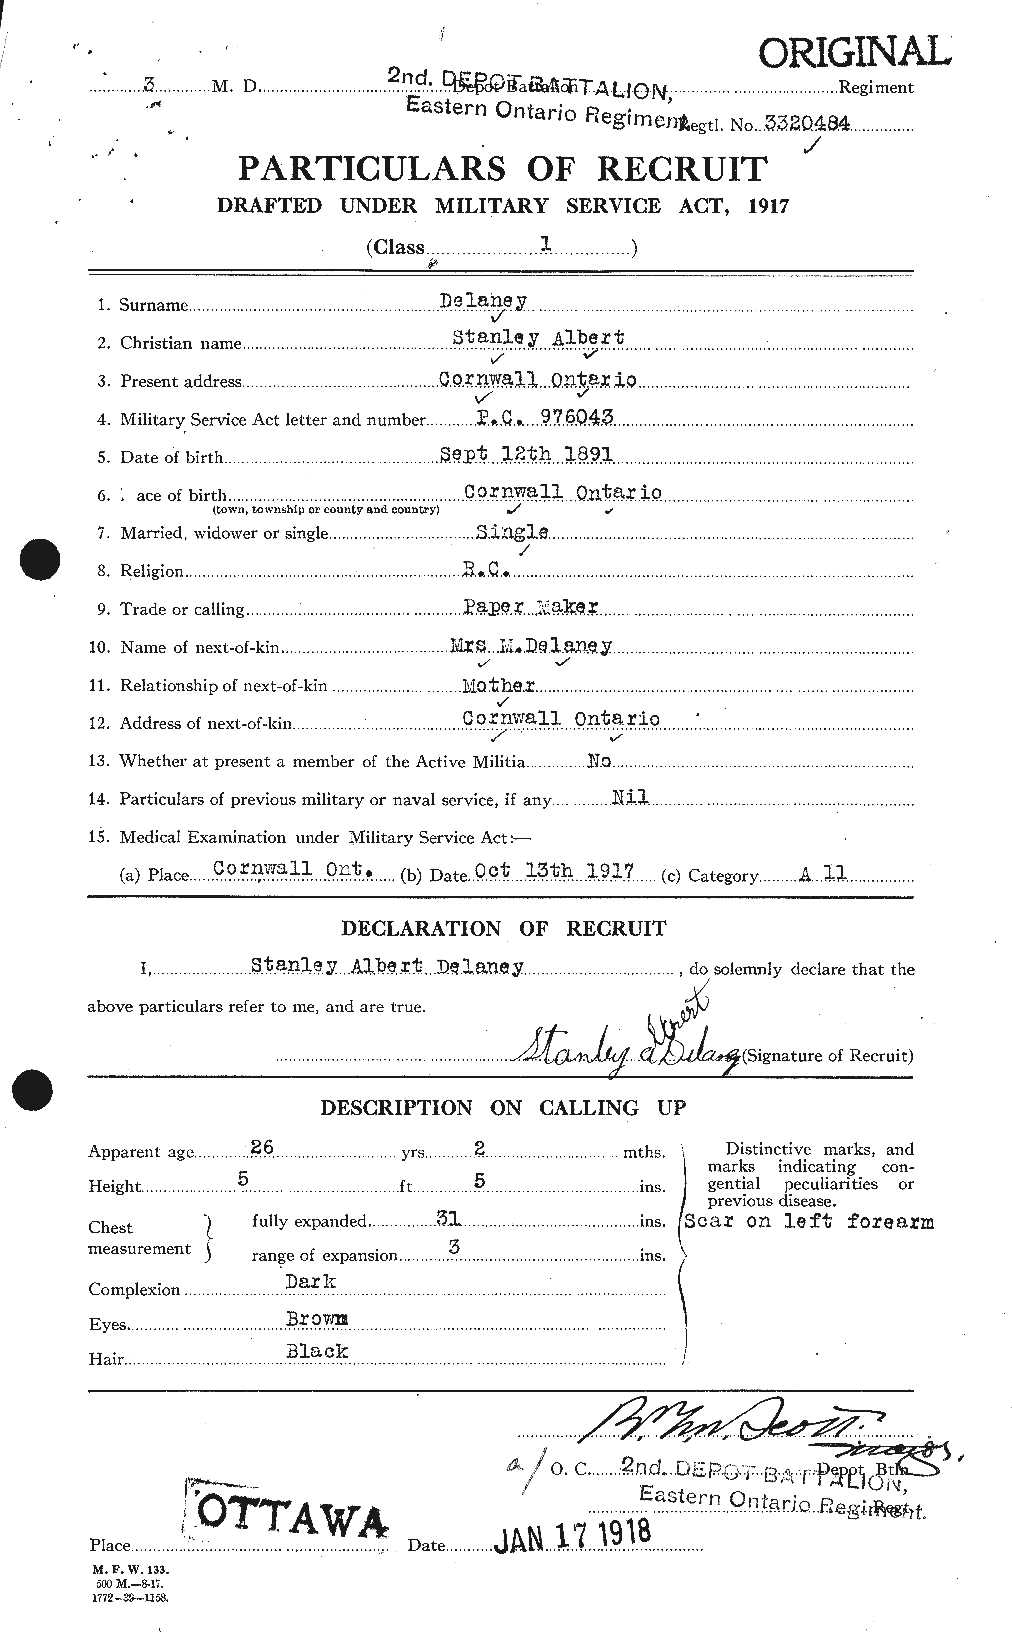 Dossiers du Personnel de la Première Guerre mondiale - CEC 285532a